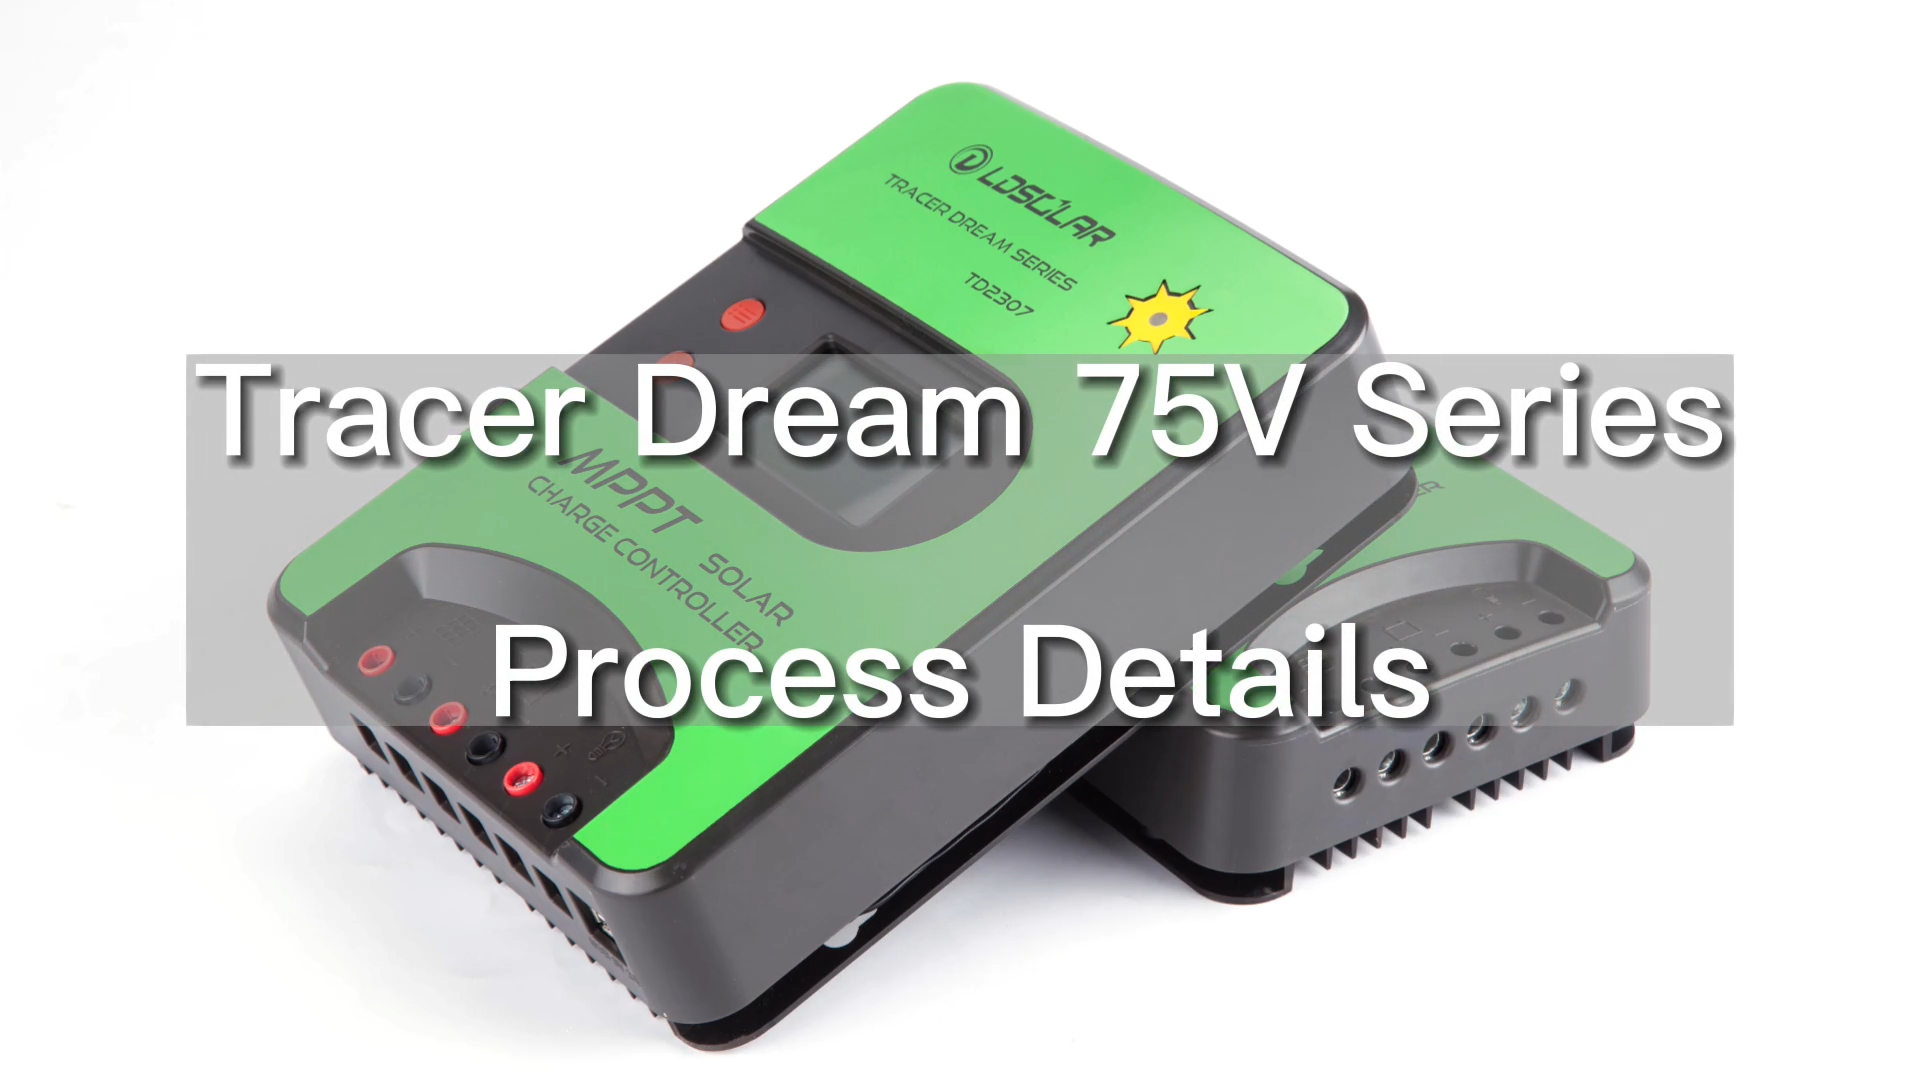 中国工厂支持蓝牙/WIFI 通信 Tracer Dream 75V 系列 mppt 太阳能充电控制器